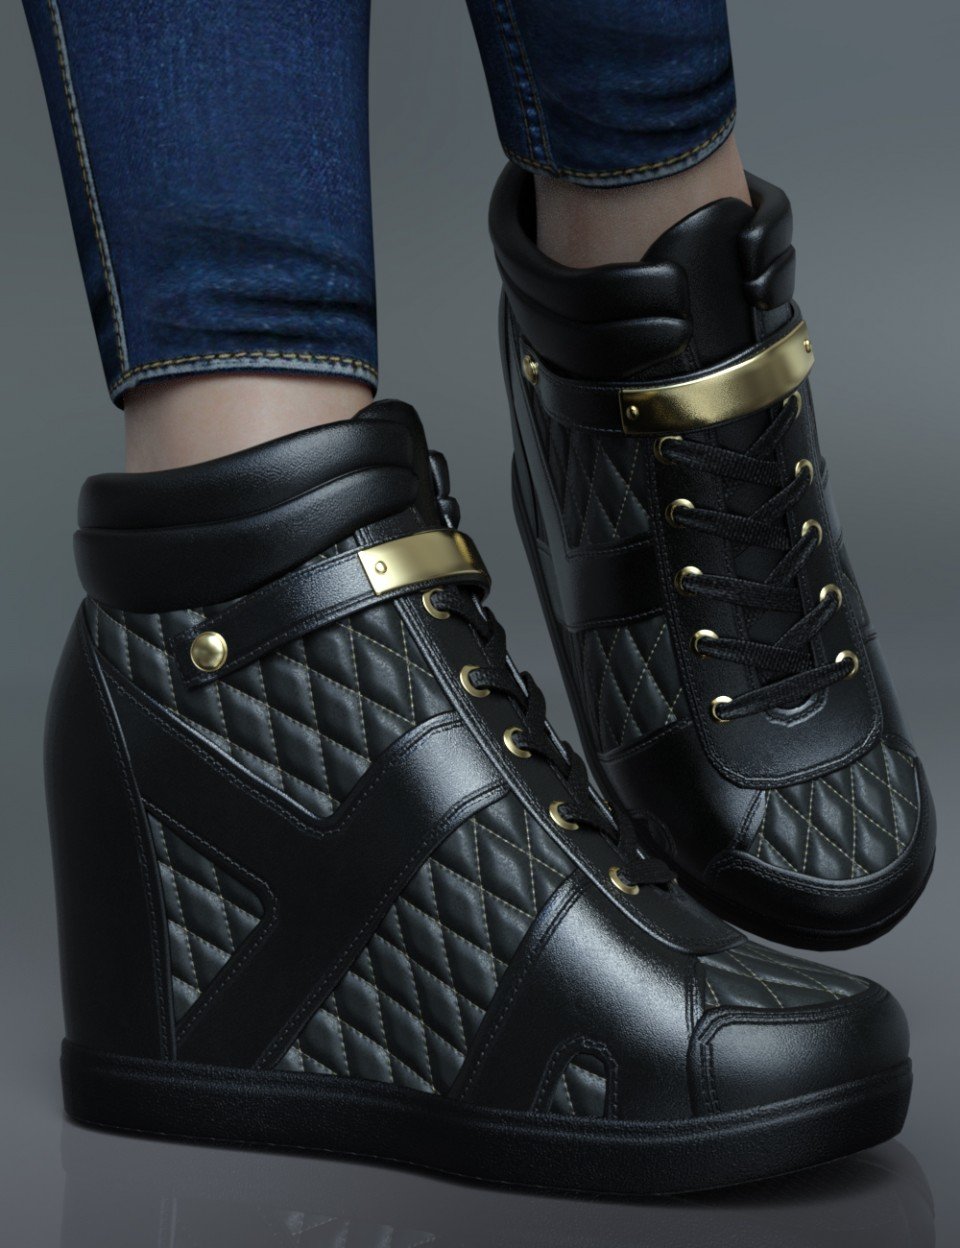 Wedged Sneakers for Genesis 8 Female(s)_DAZ3DDL